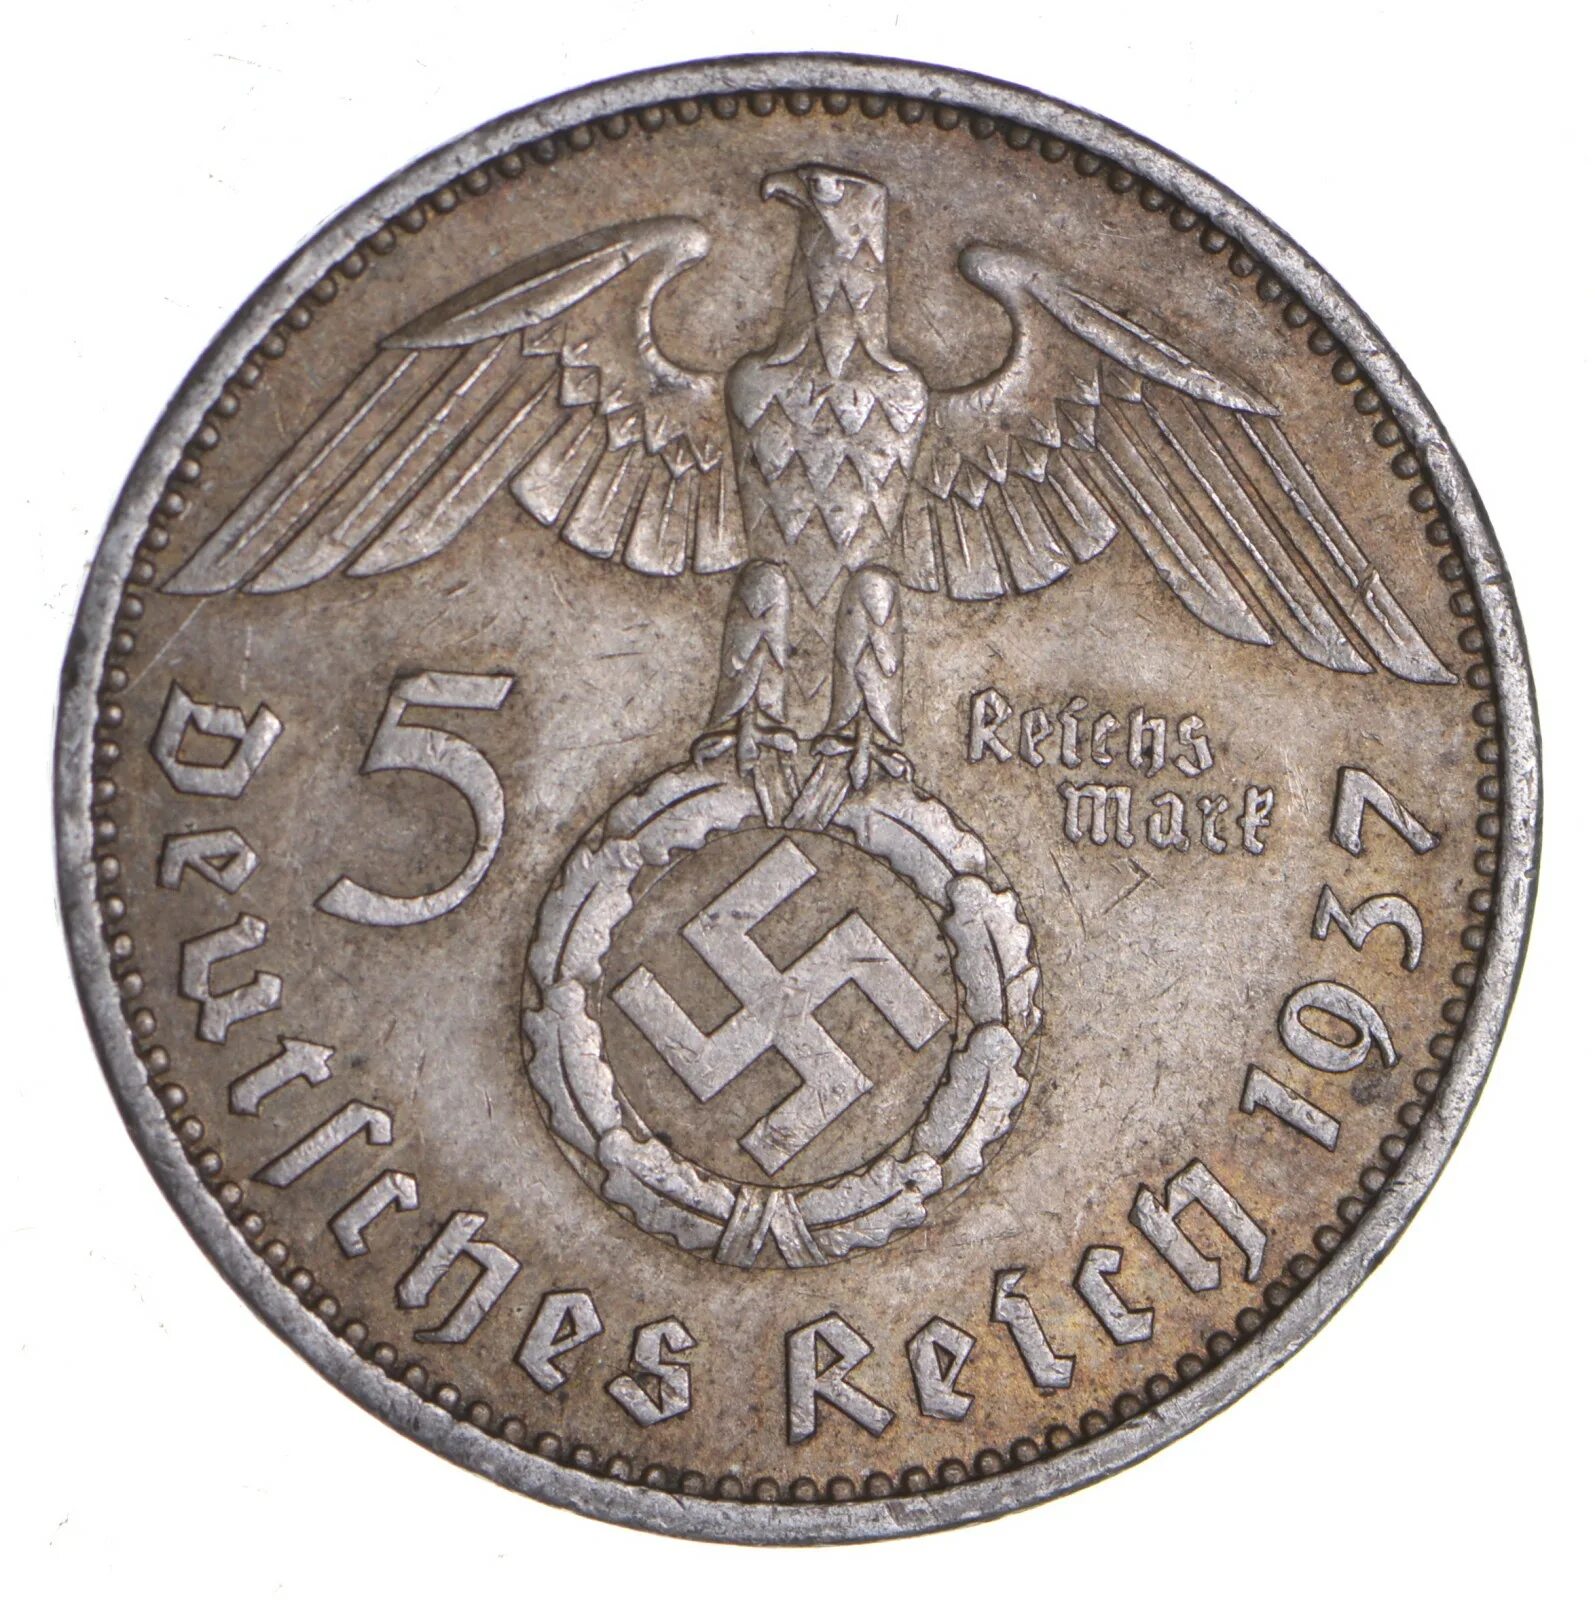 Монета немецкая 5 deutktnes Relin 1937. Монетка 1939 Германия. Немецкие монеты второй мировой войны. Монета 1937 немецкая со свастикой.